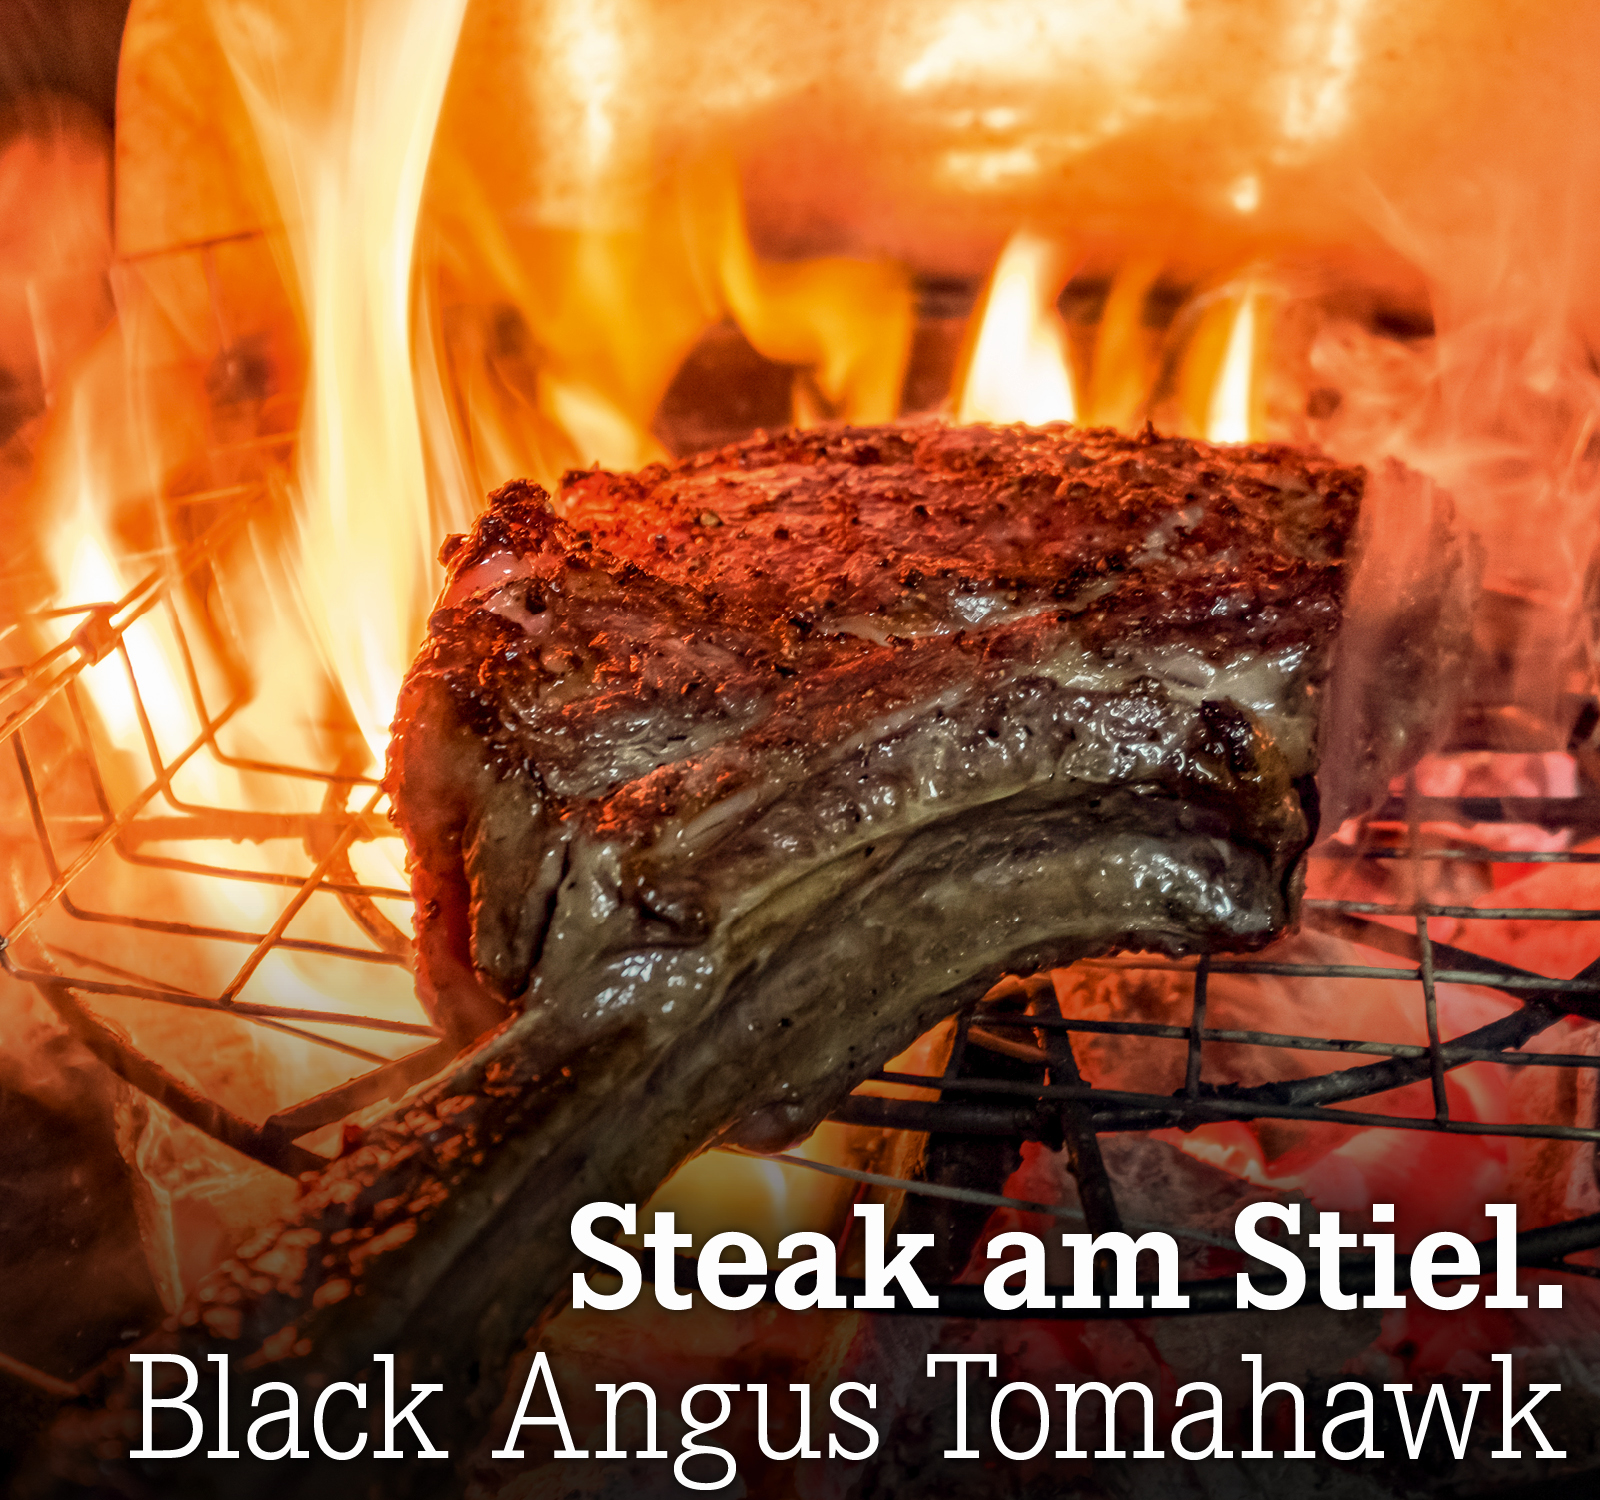 Steak am Stiel. Black Angus Tomahawk